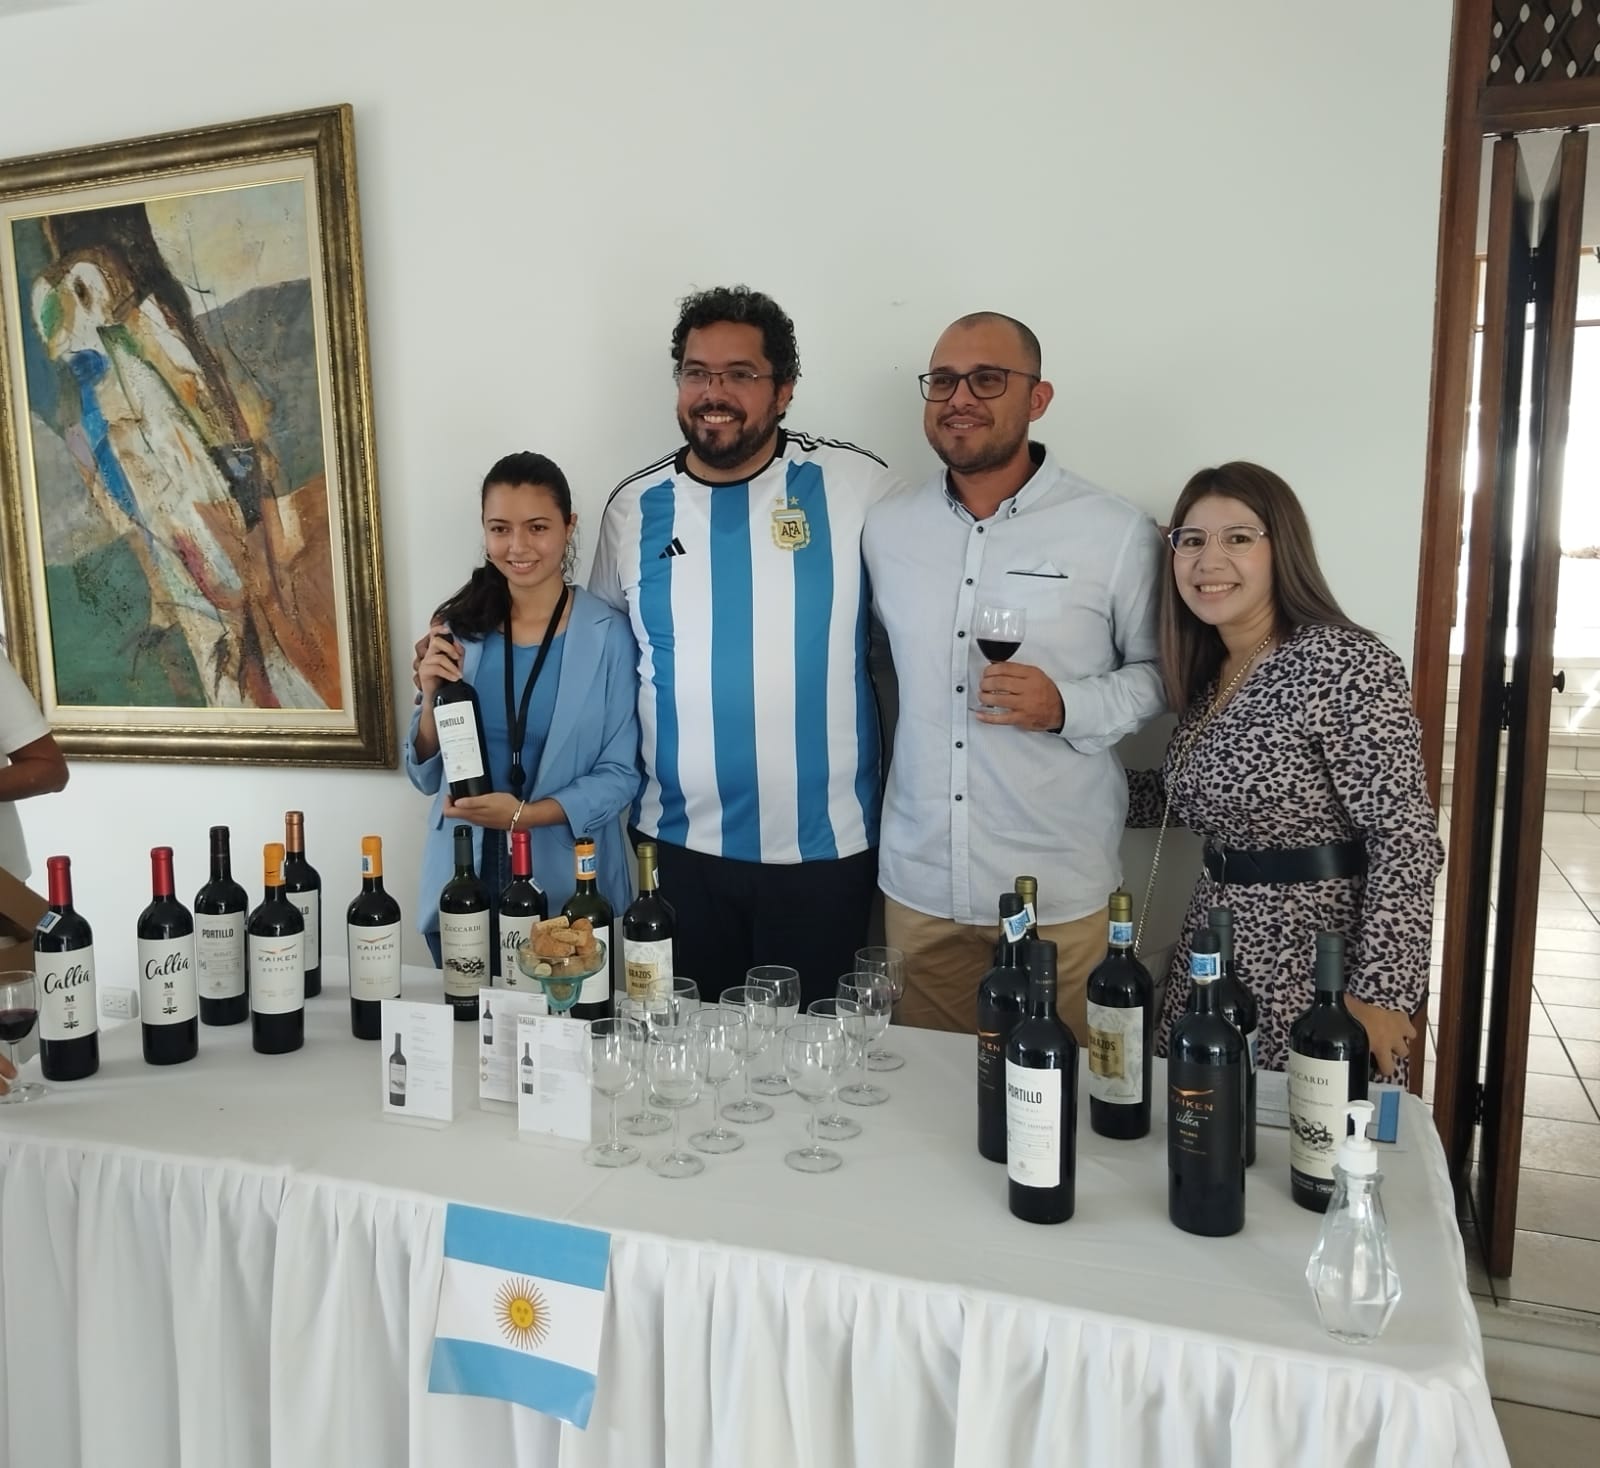 Día Nacional del Mate: la bebida que une a los argentinos - La Informativa